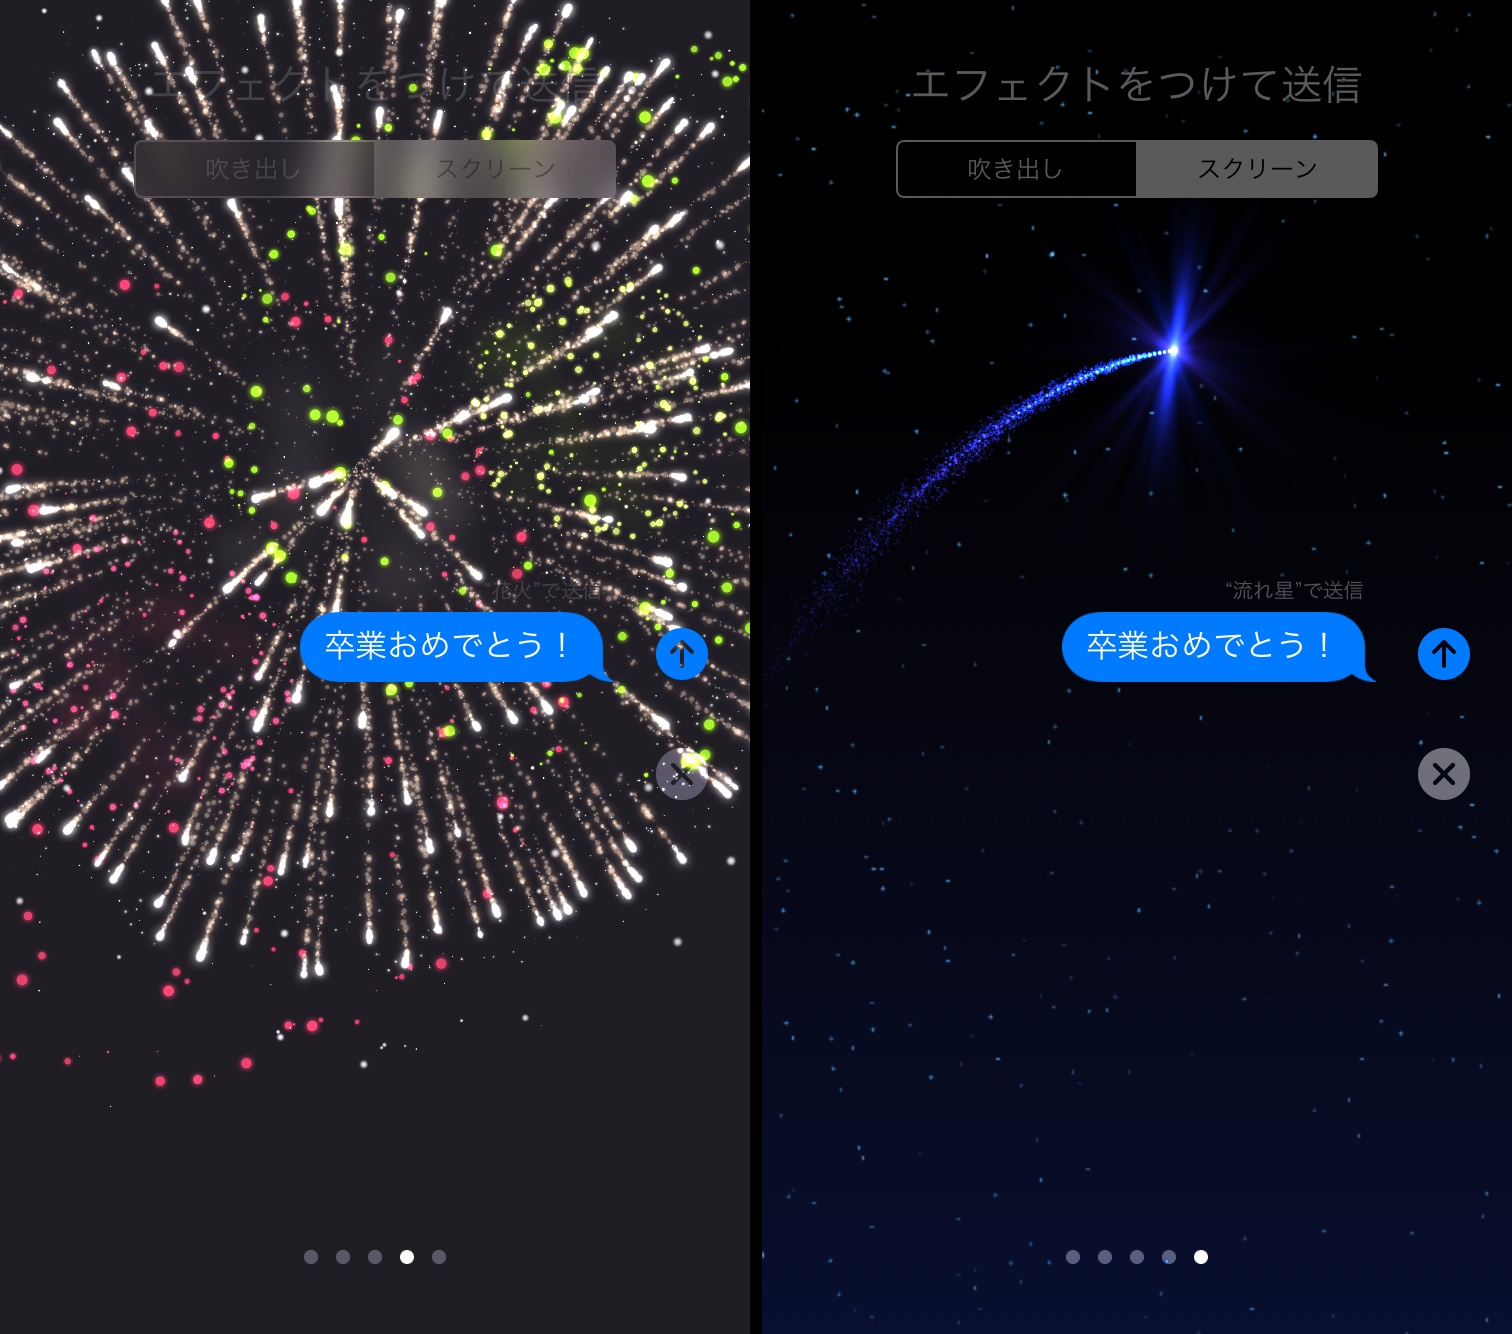 Ios10で Imessege が大幅進化 アニメーションつきメッセージが楽しすぎる Iphone Tips Engadget 日本版